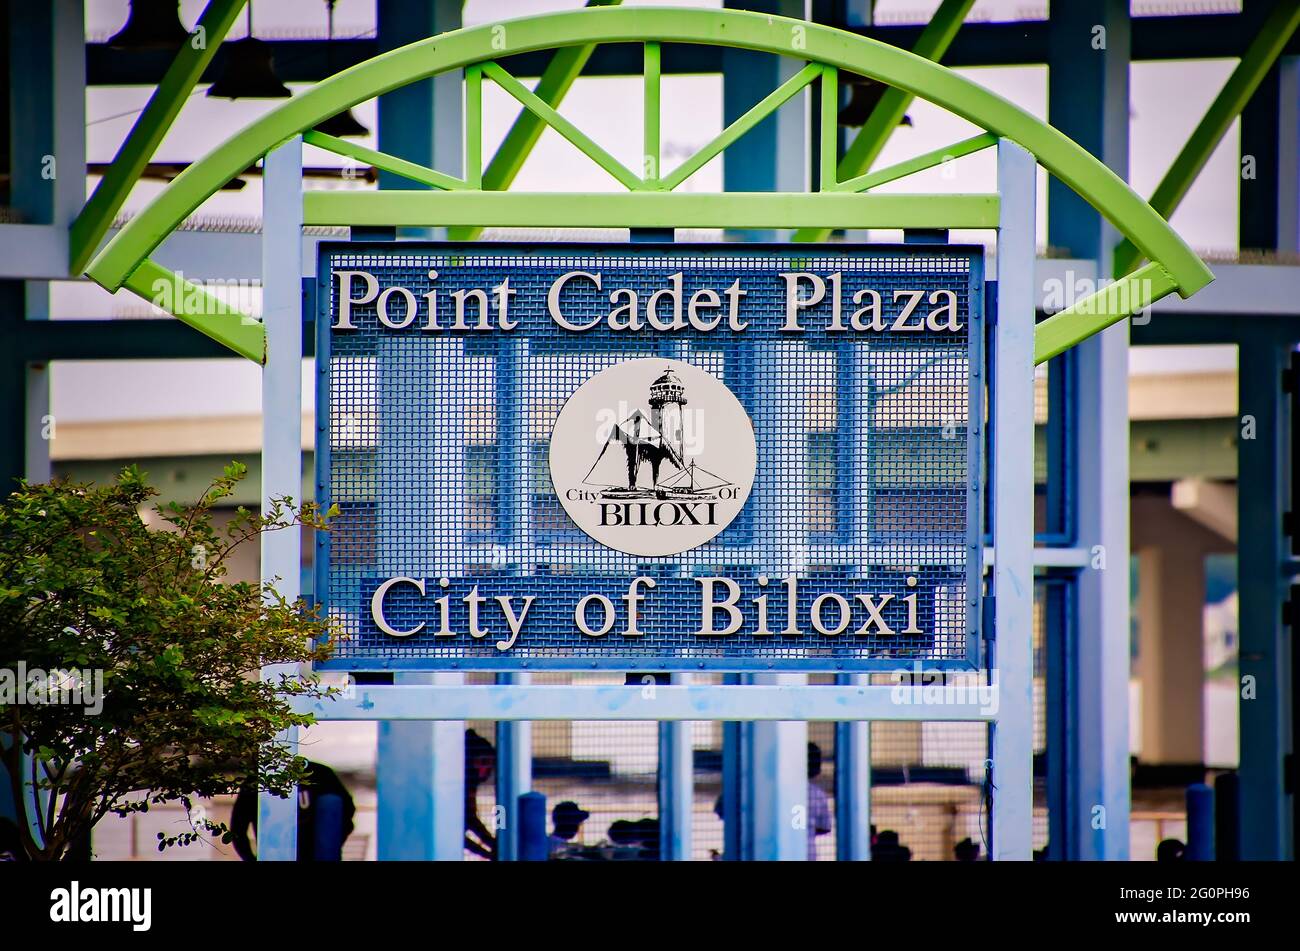 Un panneau pour point Cadet Plaza est photographié, le 29 mai 2021, à Biloxi, Mississippi. Le parc en bord de mer est doté d'un grand pavillon et d'une pataugeoire. Banque D'Images